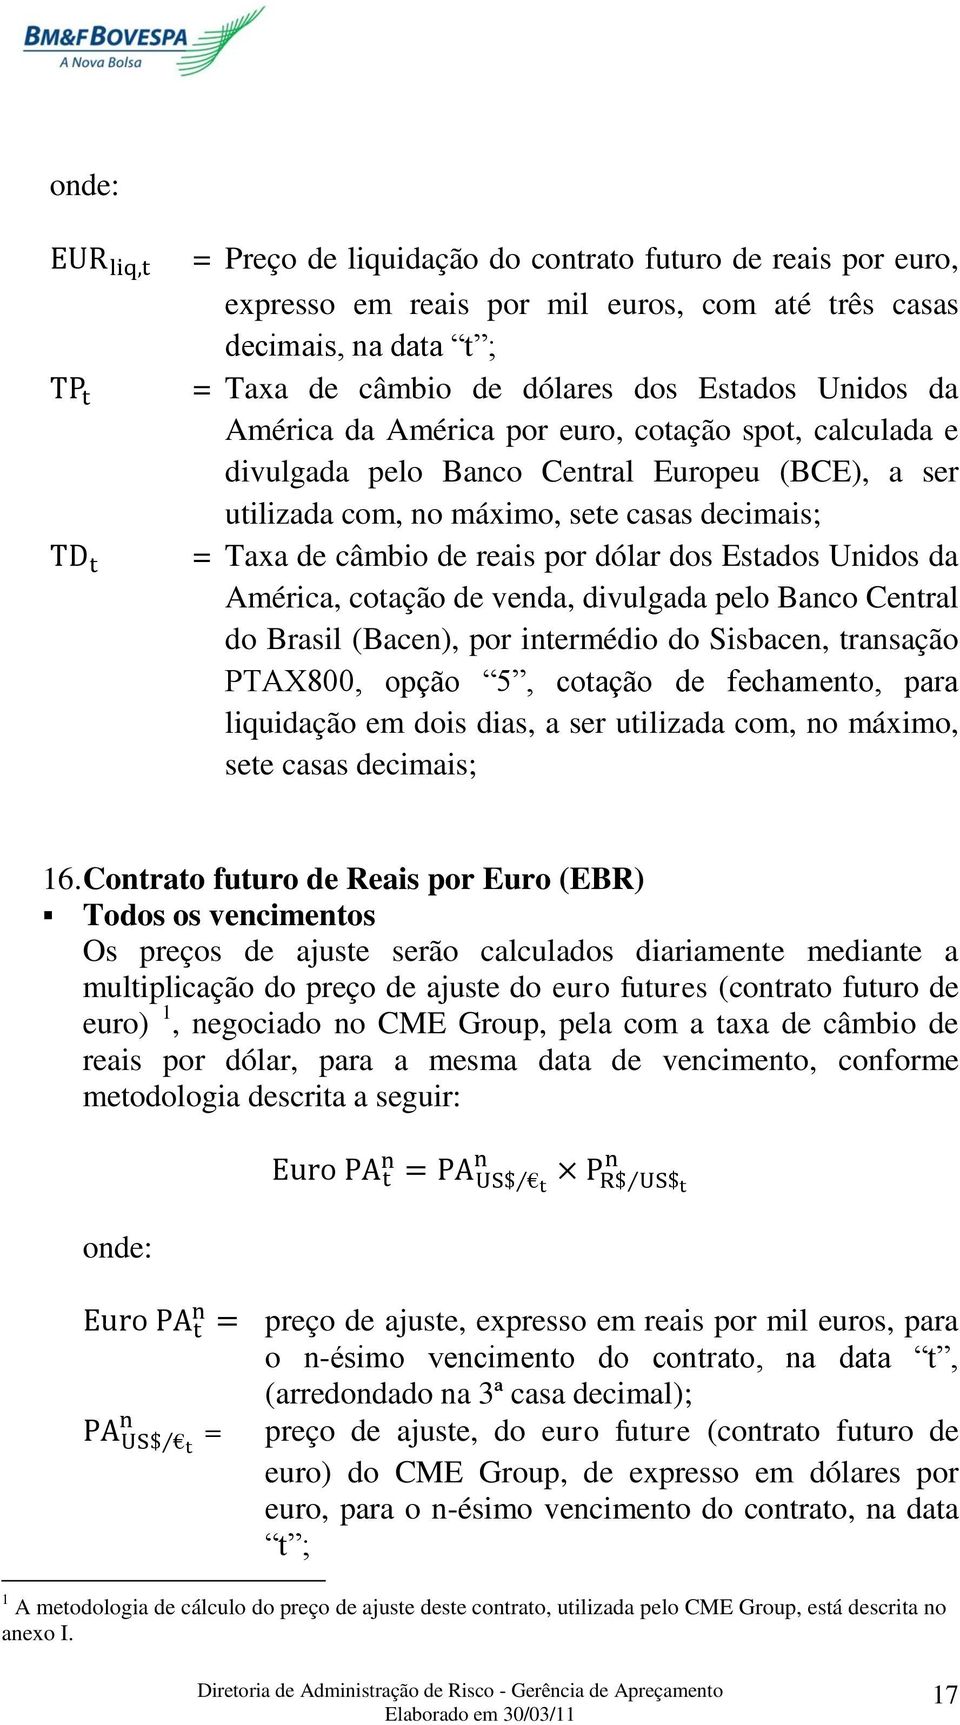 América, cotação de venda, divulgada pelo Banco Central do Brasil (Bacen), por intermédio do Sisbacen, transação PTAX800, opção 5, cotação de fechamento, para liquidação em dois dias, a ser utilizada